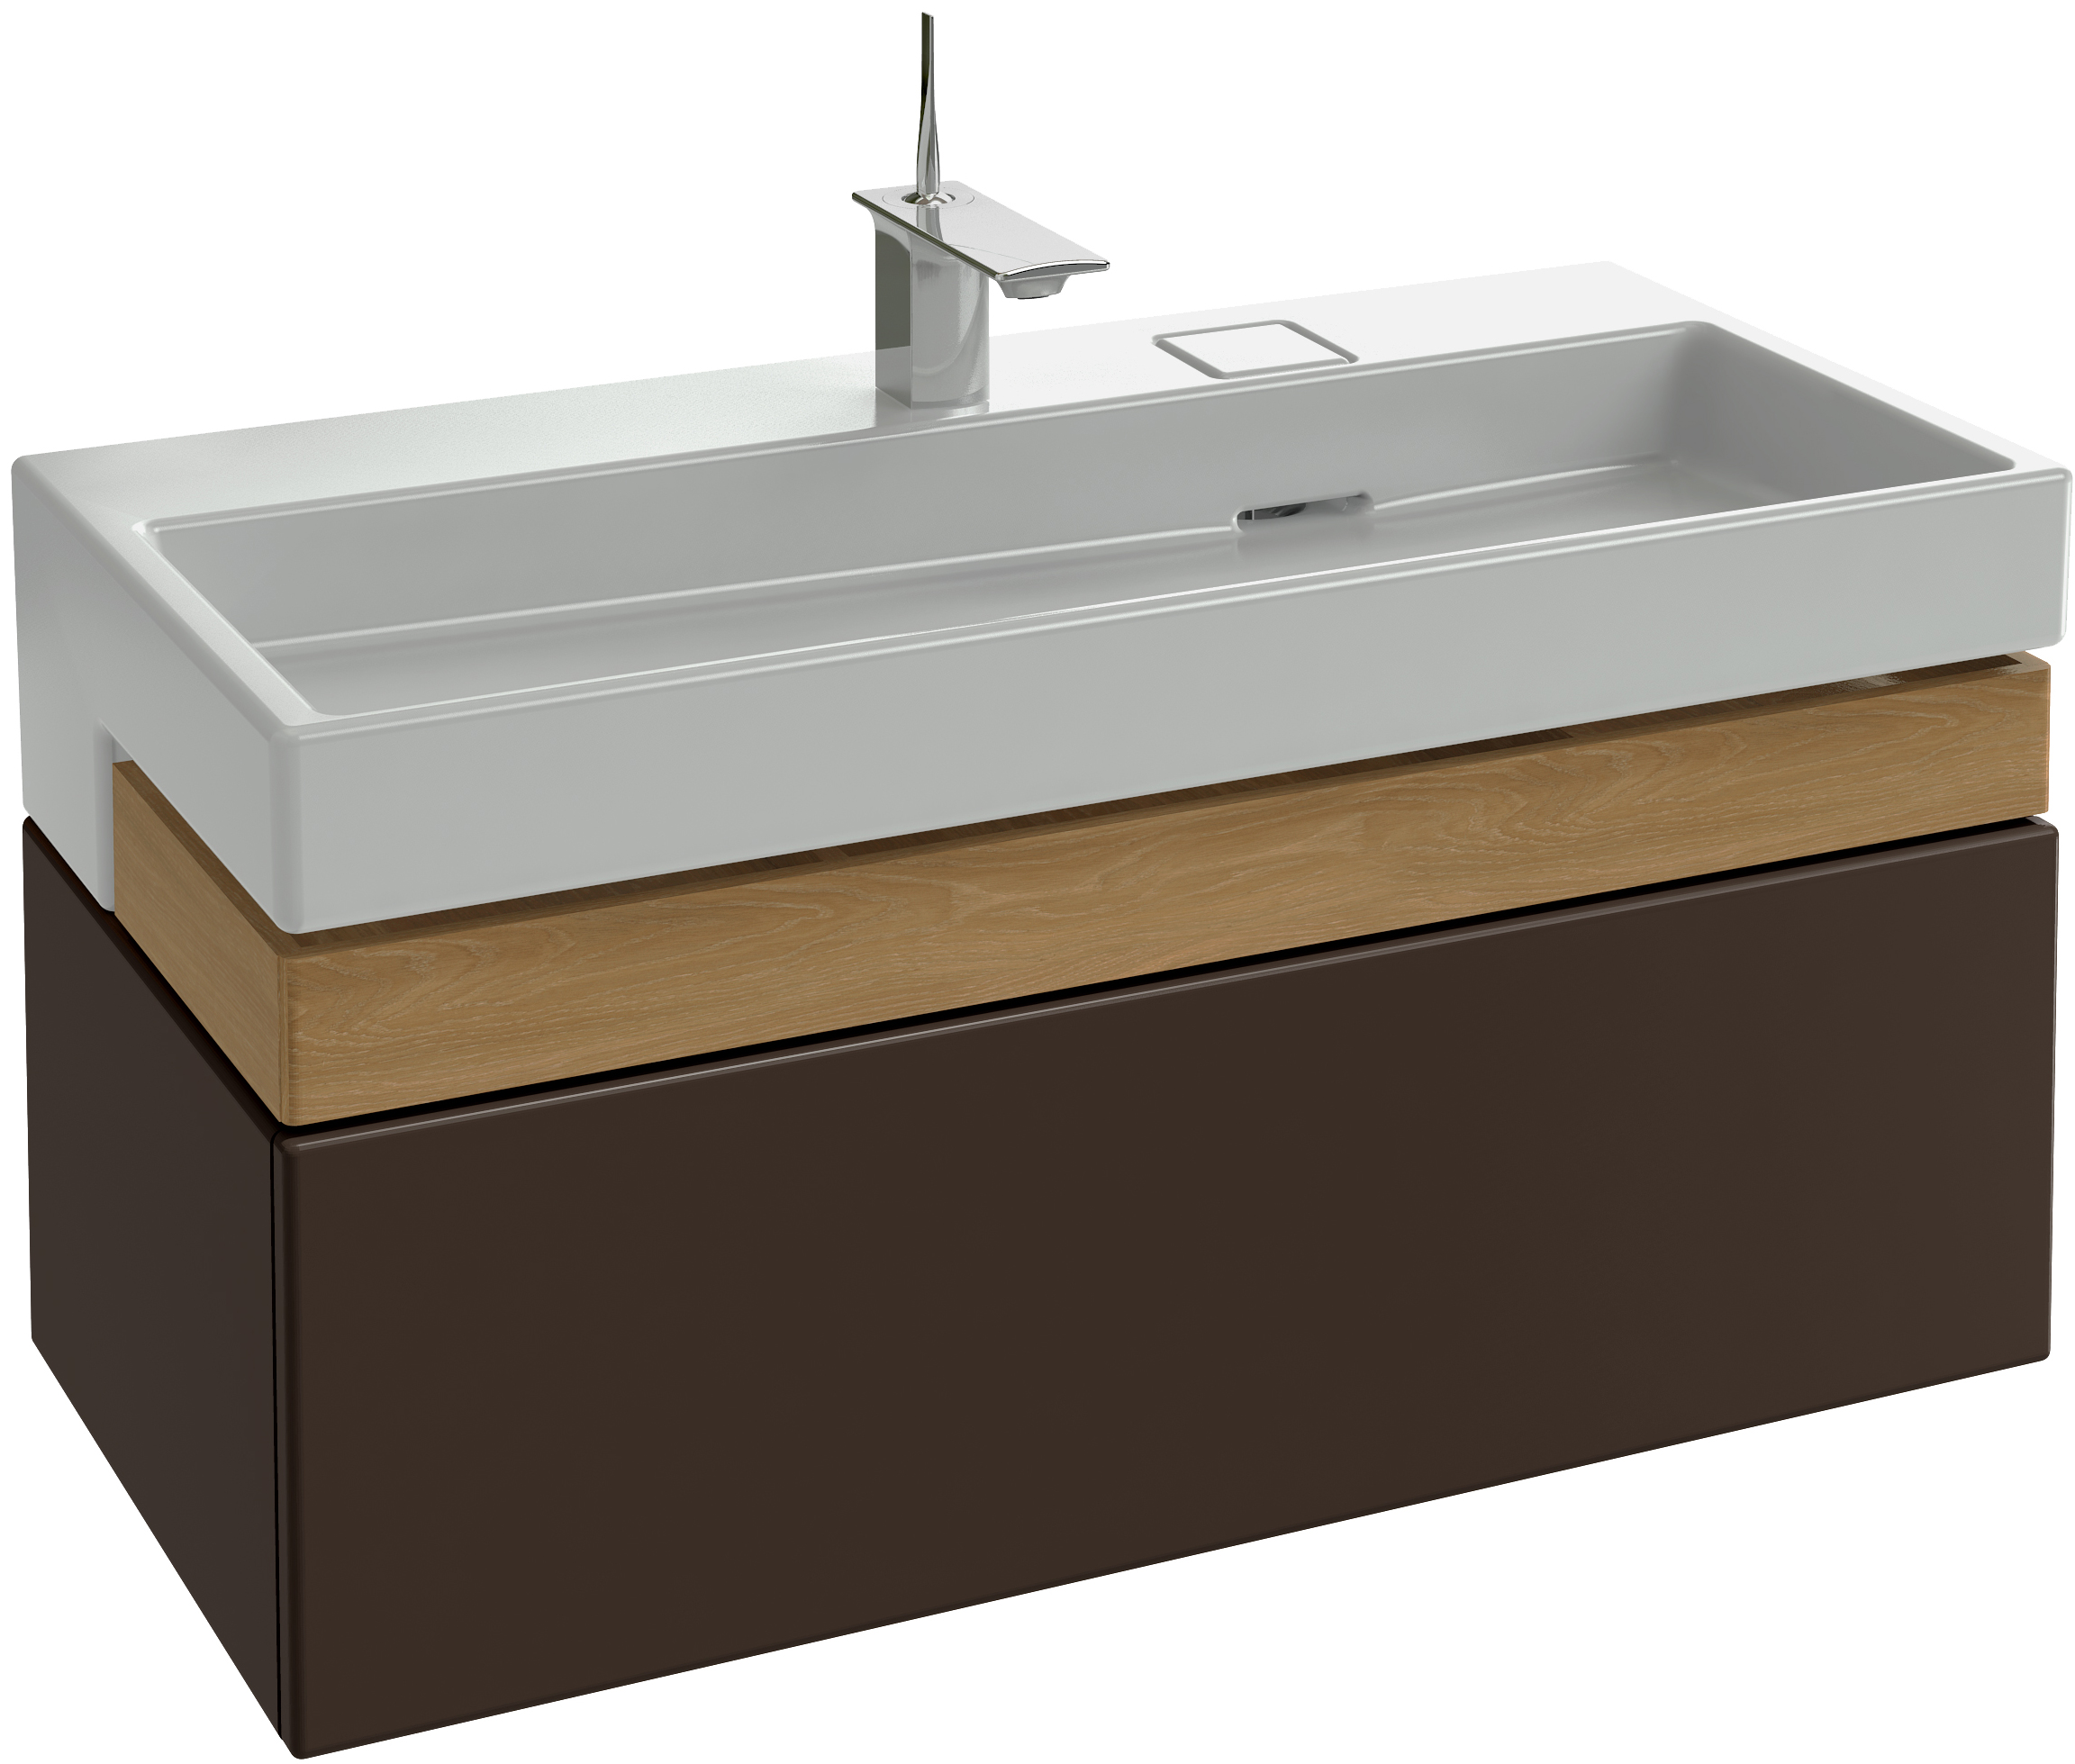 Мебель для ванной Jacob Delafon Terrace 100 ледяной коричневый лак